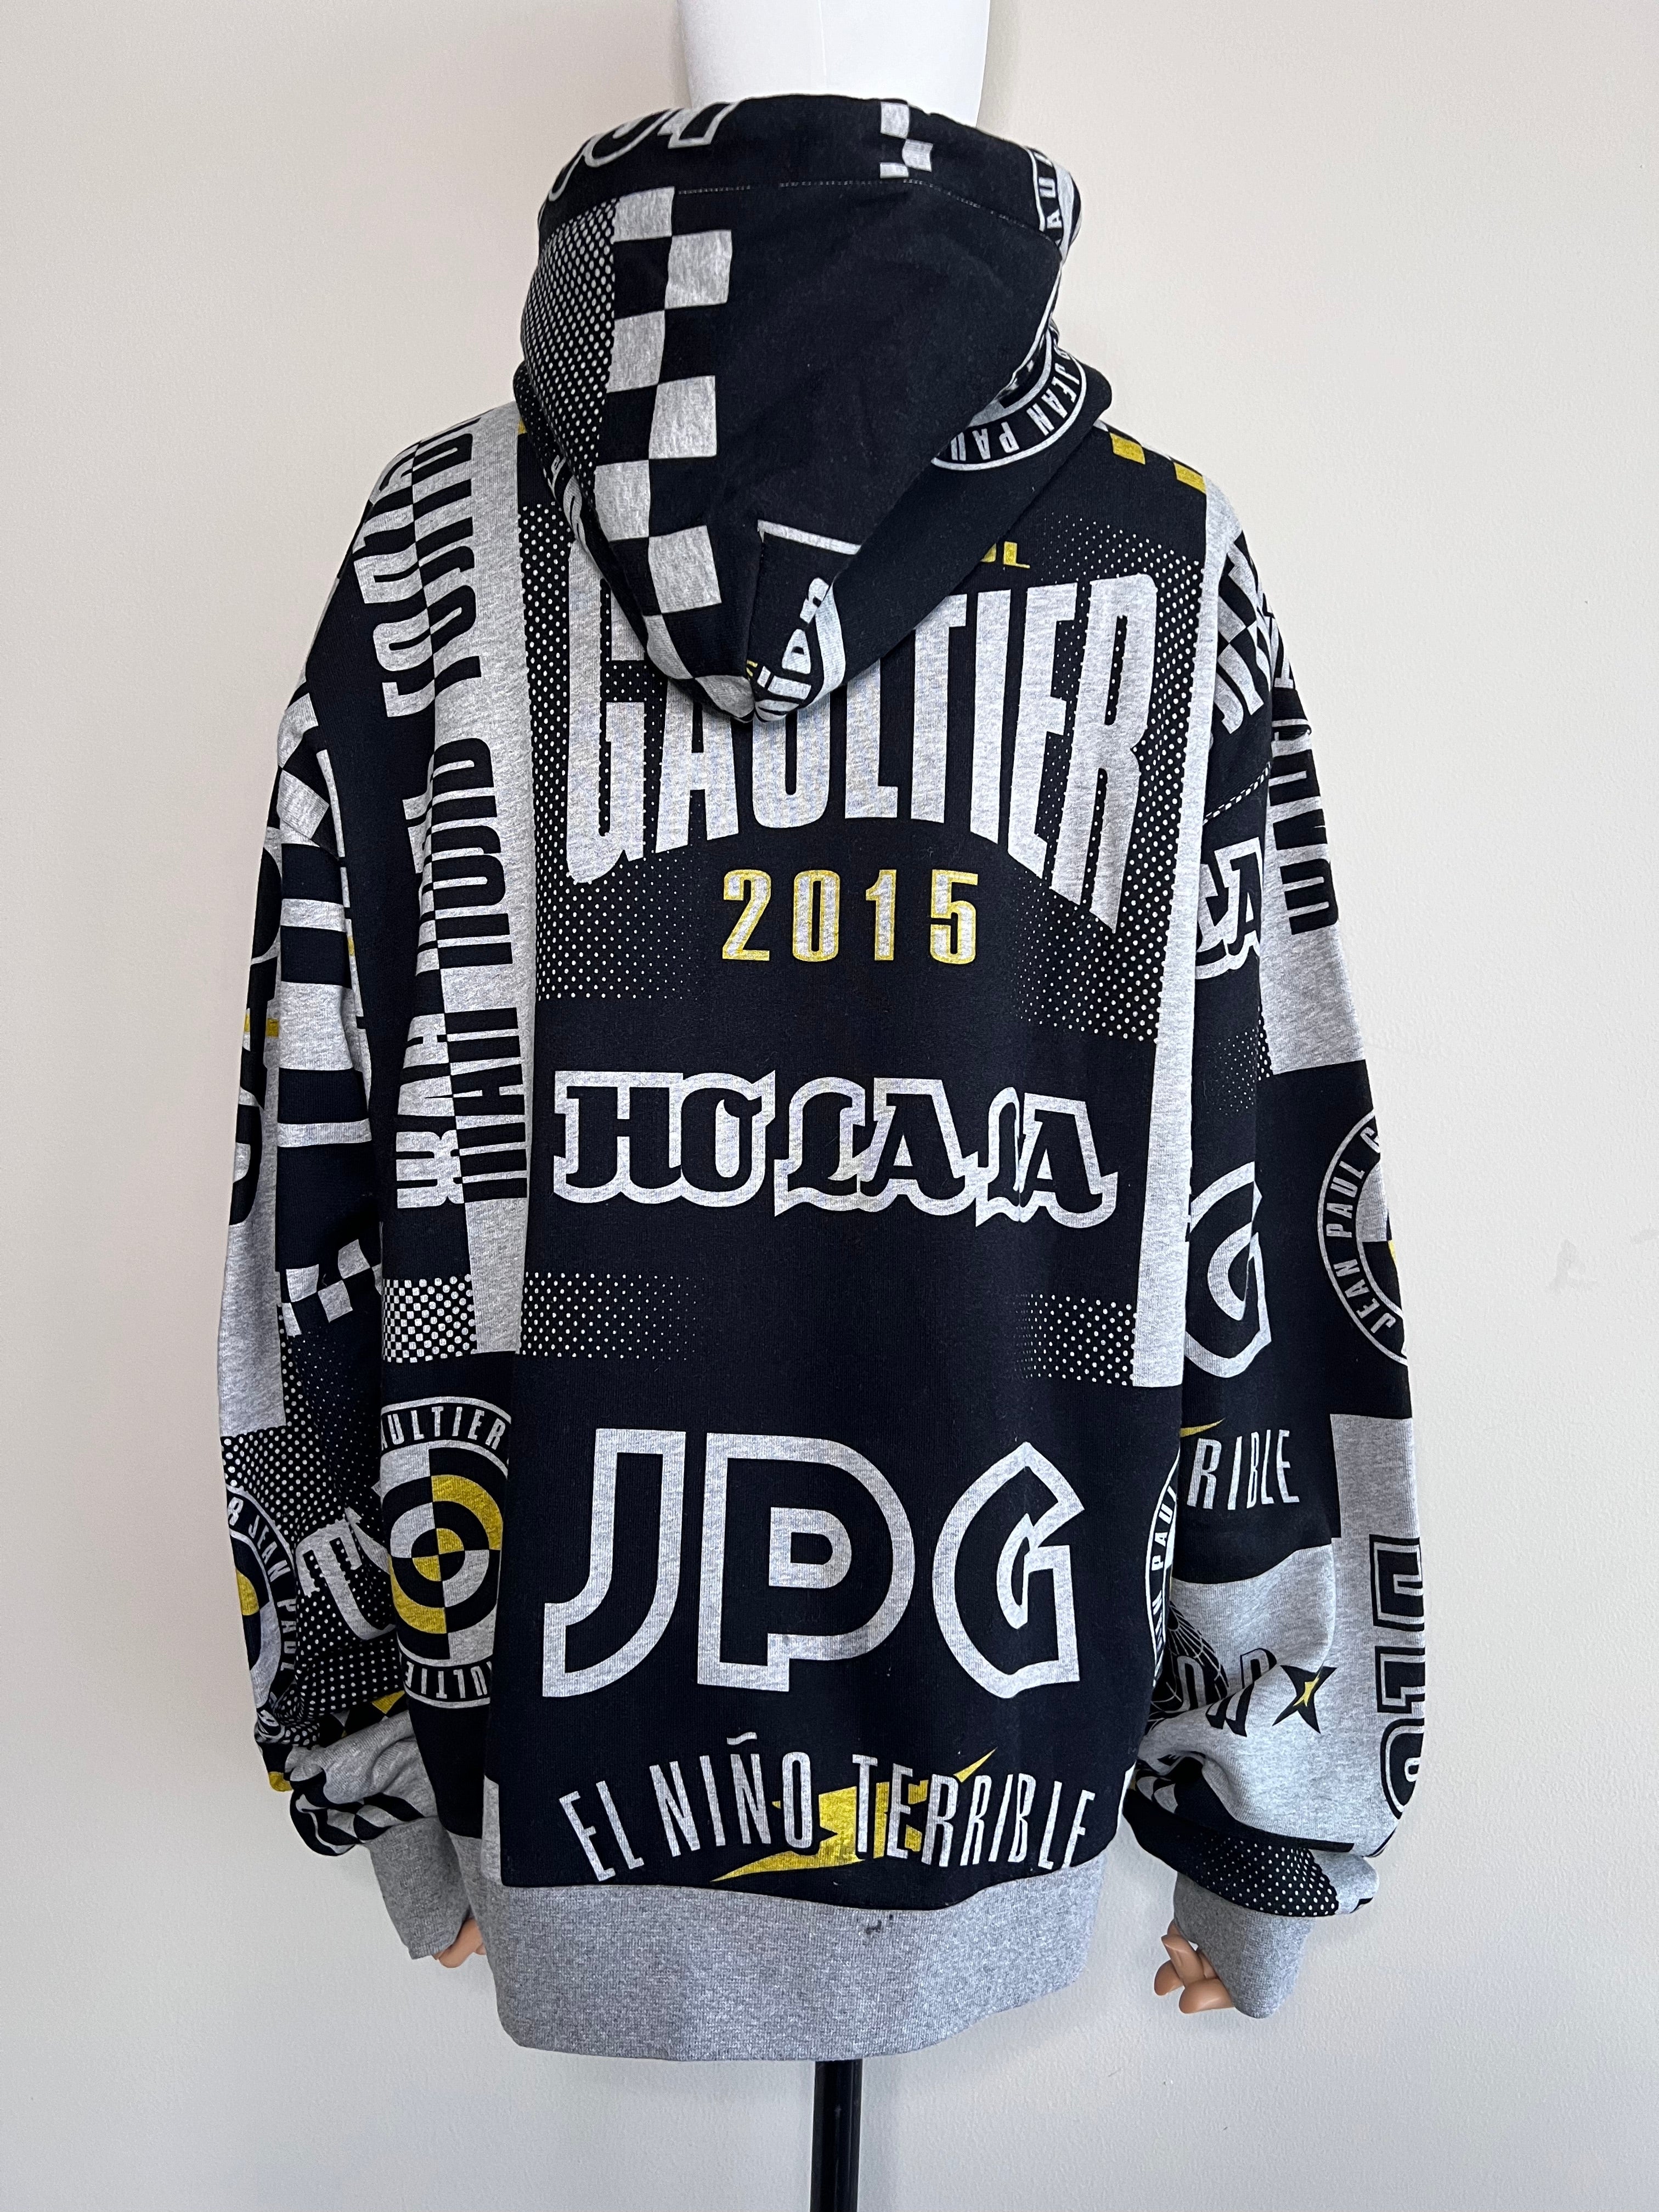 Grey printed Sweat JPEG hoodie jacket  - Jean Paul Gaultier